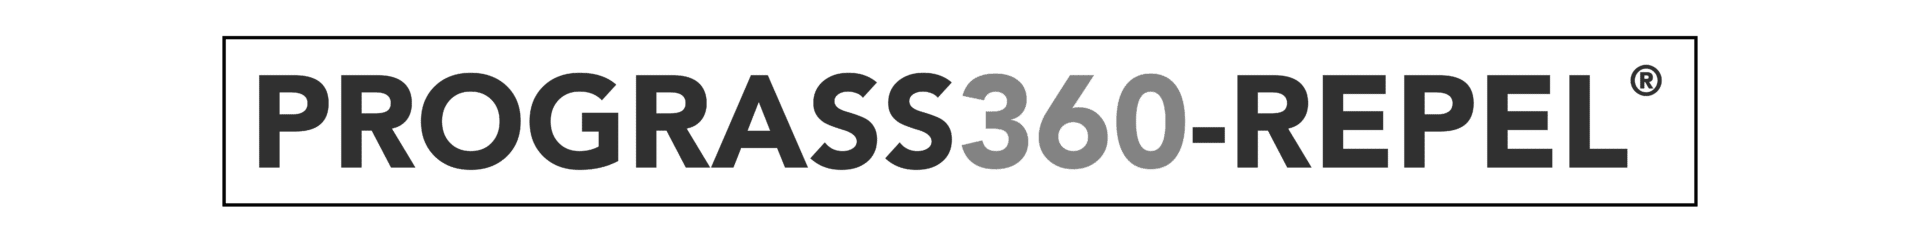 PROGRASS360 - REPEL Registered